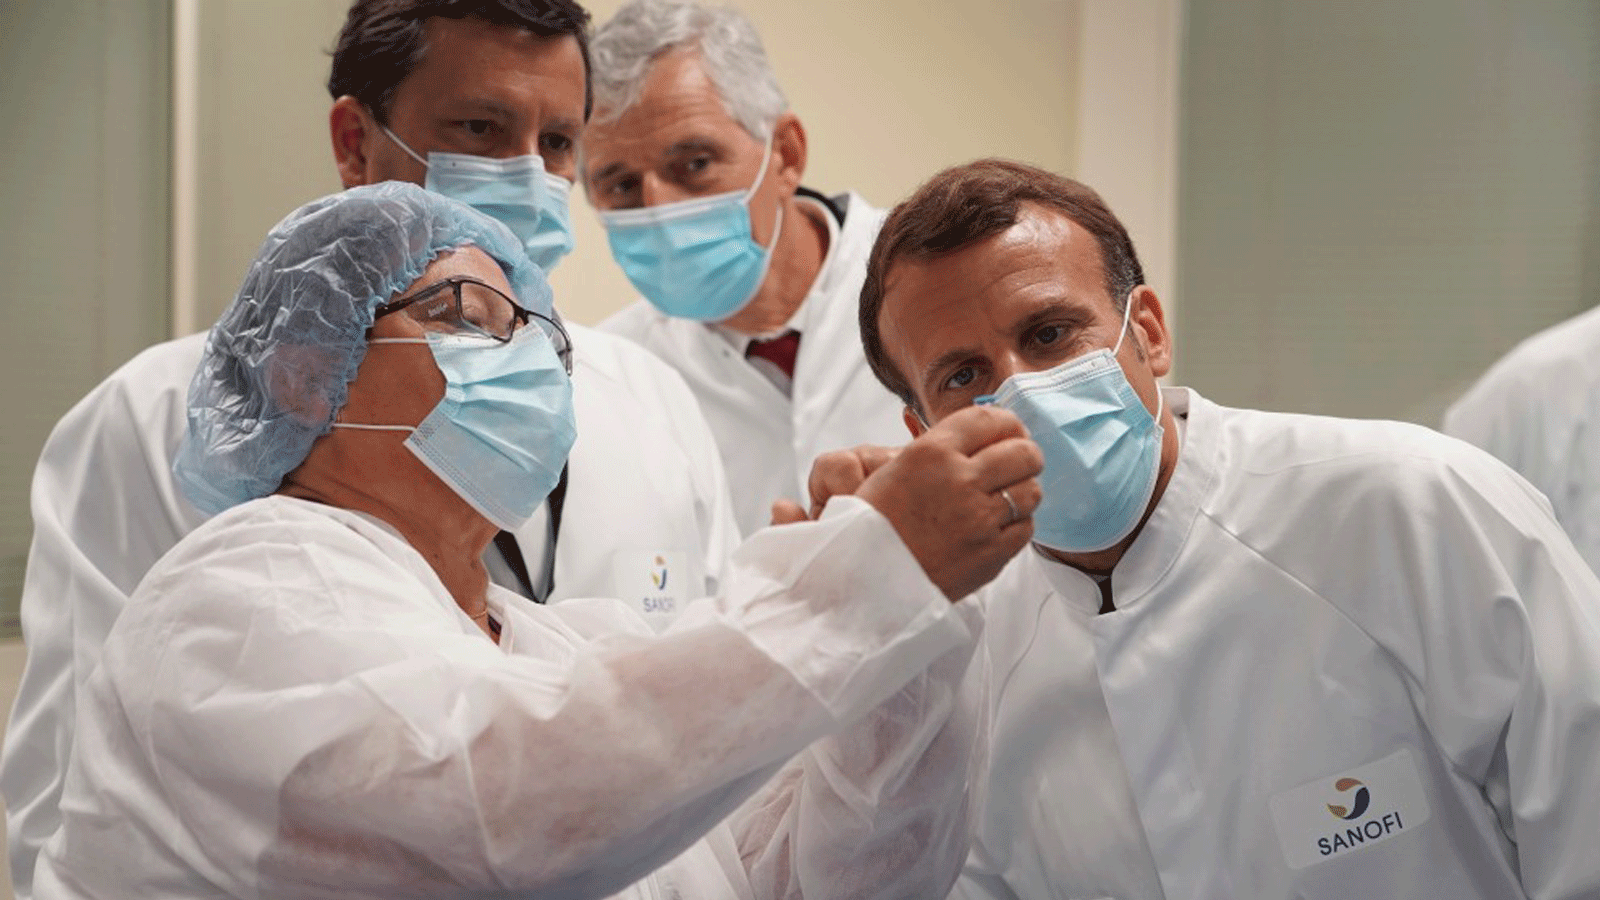 الرئيس الفرنسي إيمانويل ماكرون يزور مختبرًا للتطوير الصناعي في وحدة اللقاحات التابعة لشركة الأدوية الفرنسية سانوفي باستور في مارسي ليتوال، بالقرب من ليون، وسط فرنسا. في 16 حزيران/ يونيو 2020.